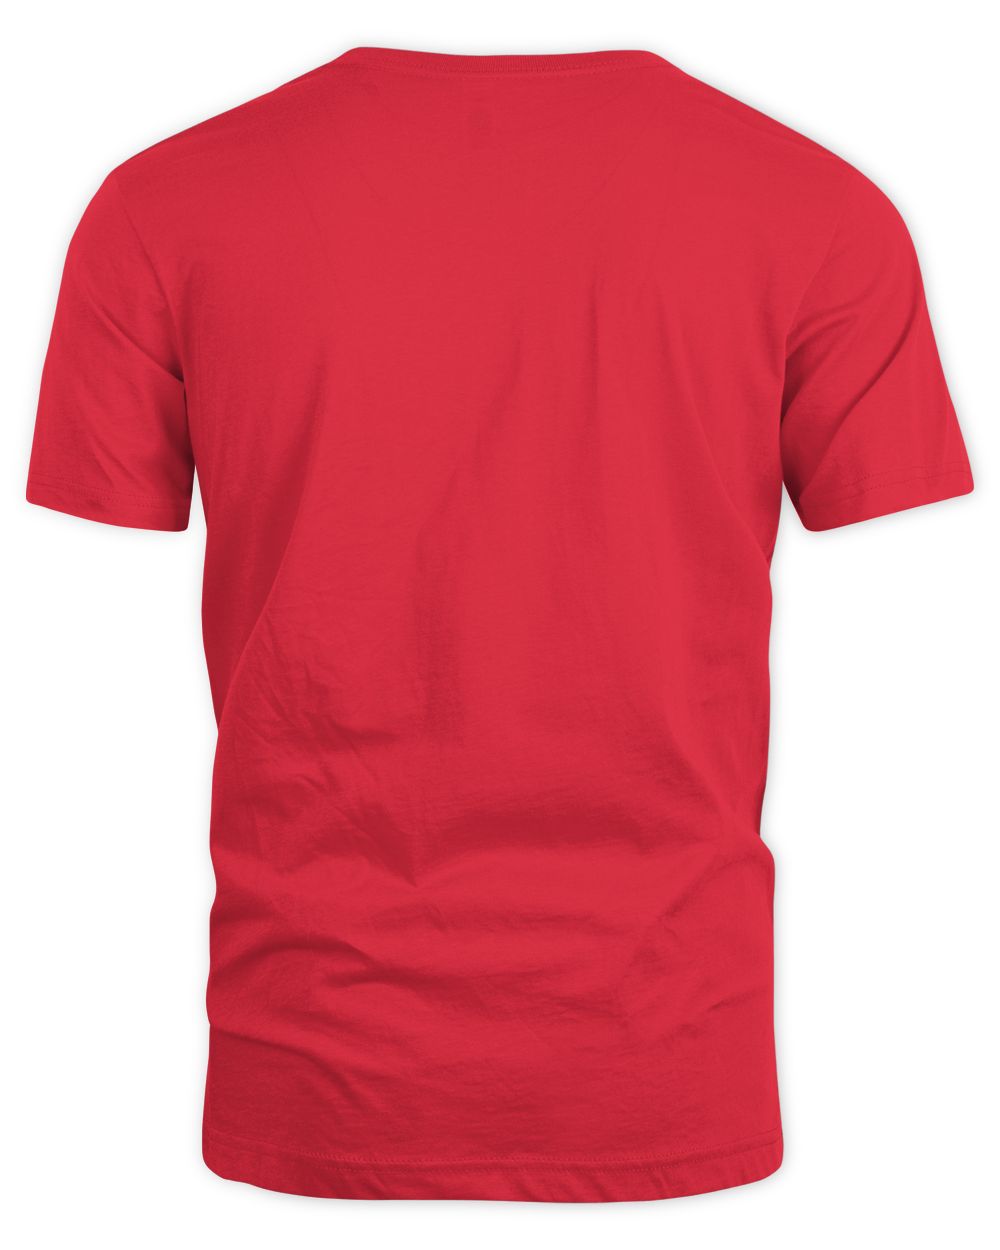 King Von Merch Demon T-Shirt Unisex Standard T-Shirt red 